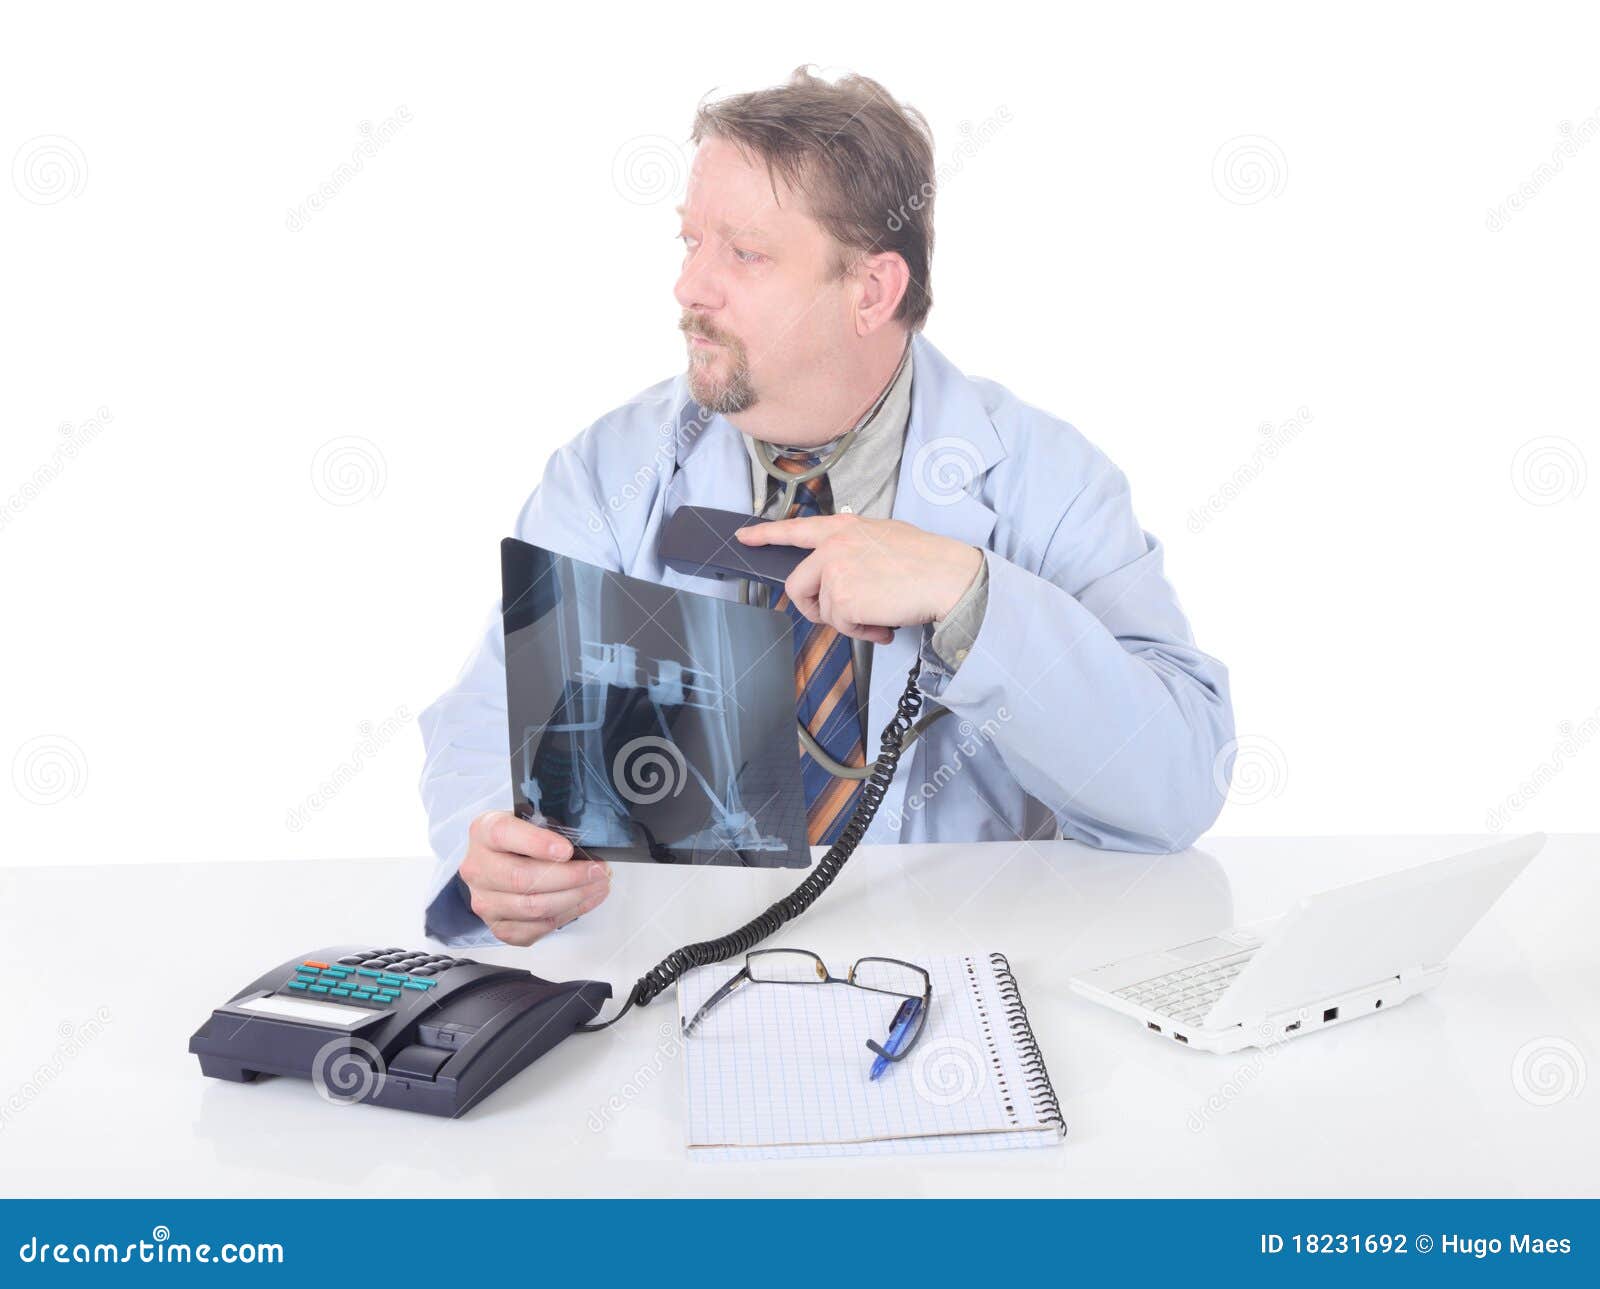 hesitating orthopedist on phone